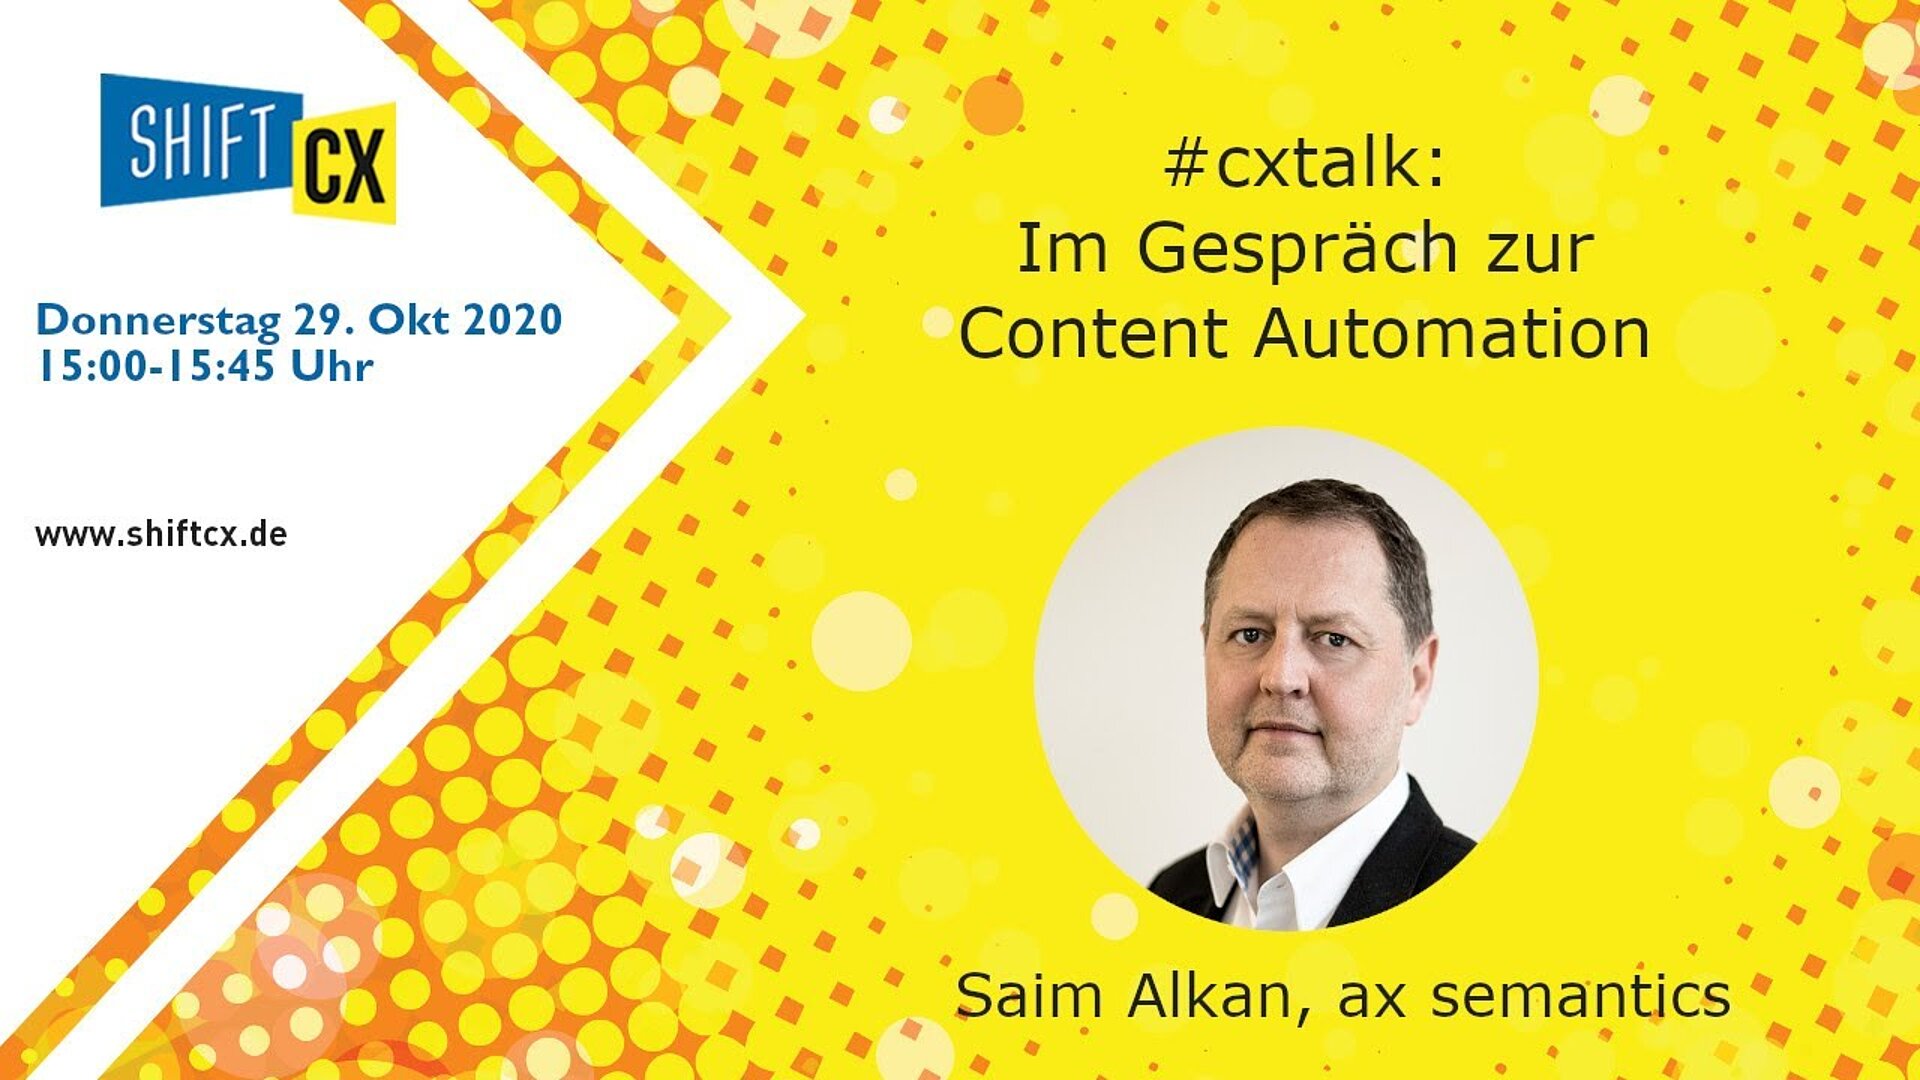 Im Gespräch mit Saim Alkan (ax semantics) zur Kundenbegeisterung durch Content Automation